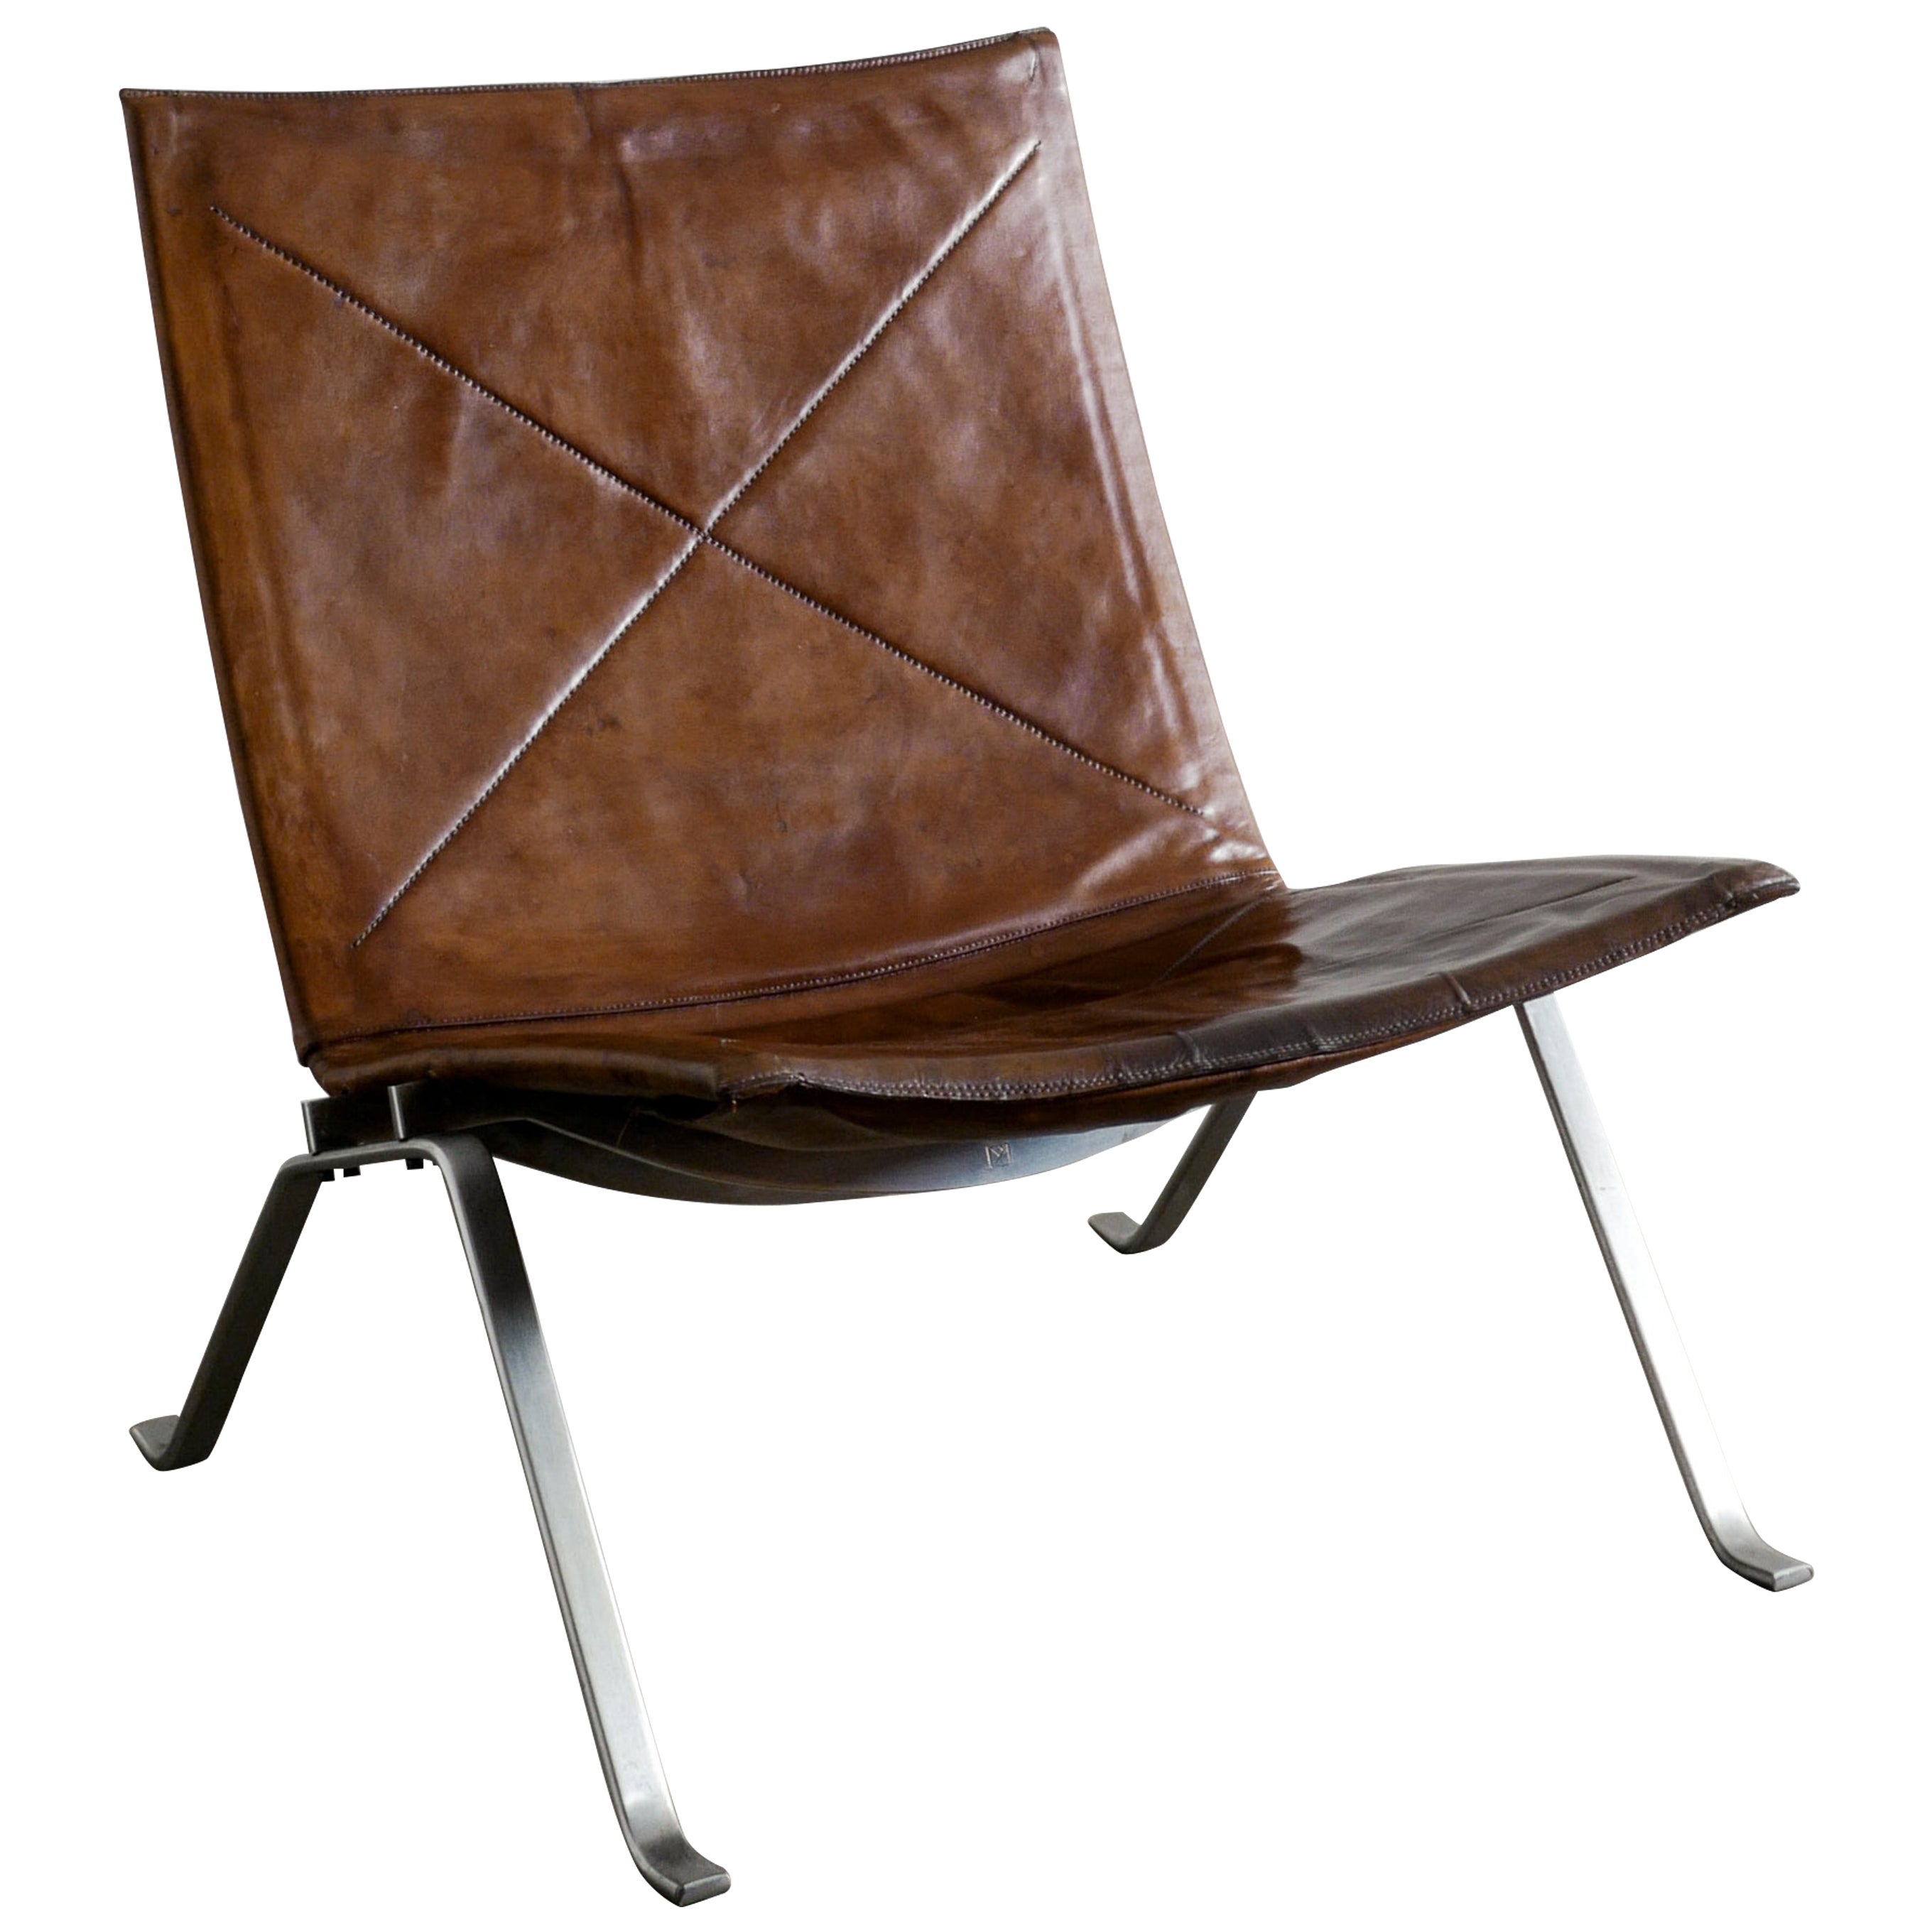 Poul Kjaerholm "PK22" Easy Chair Produced by E Kold Christensen Denmark 1960s